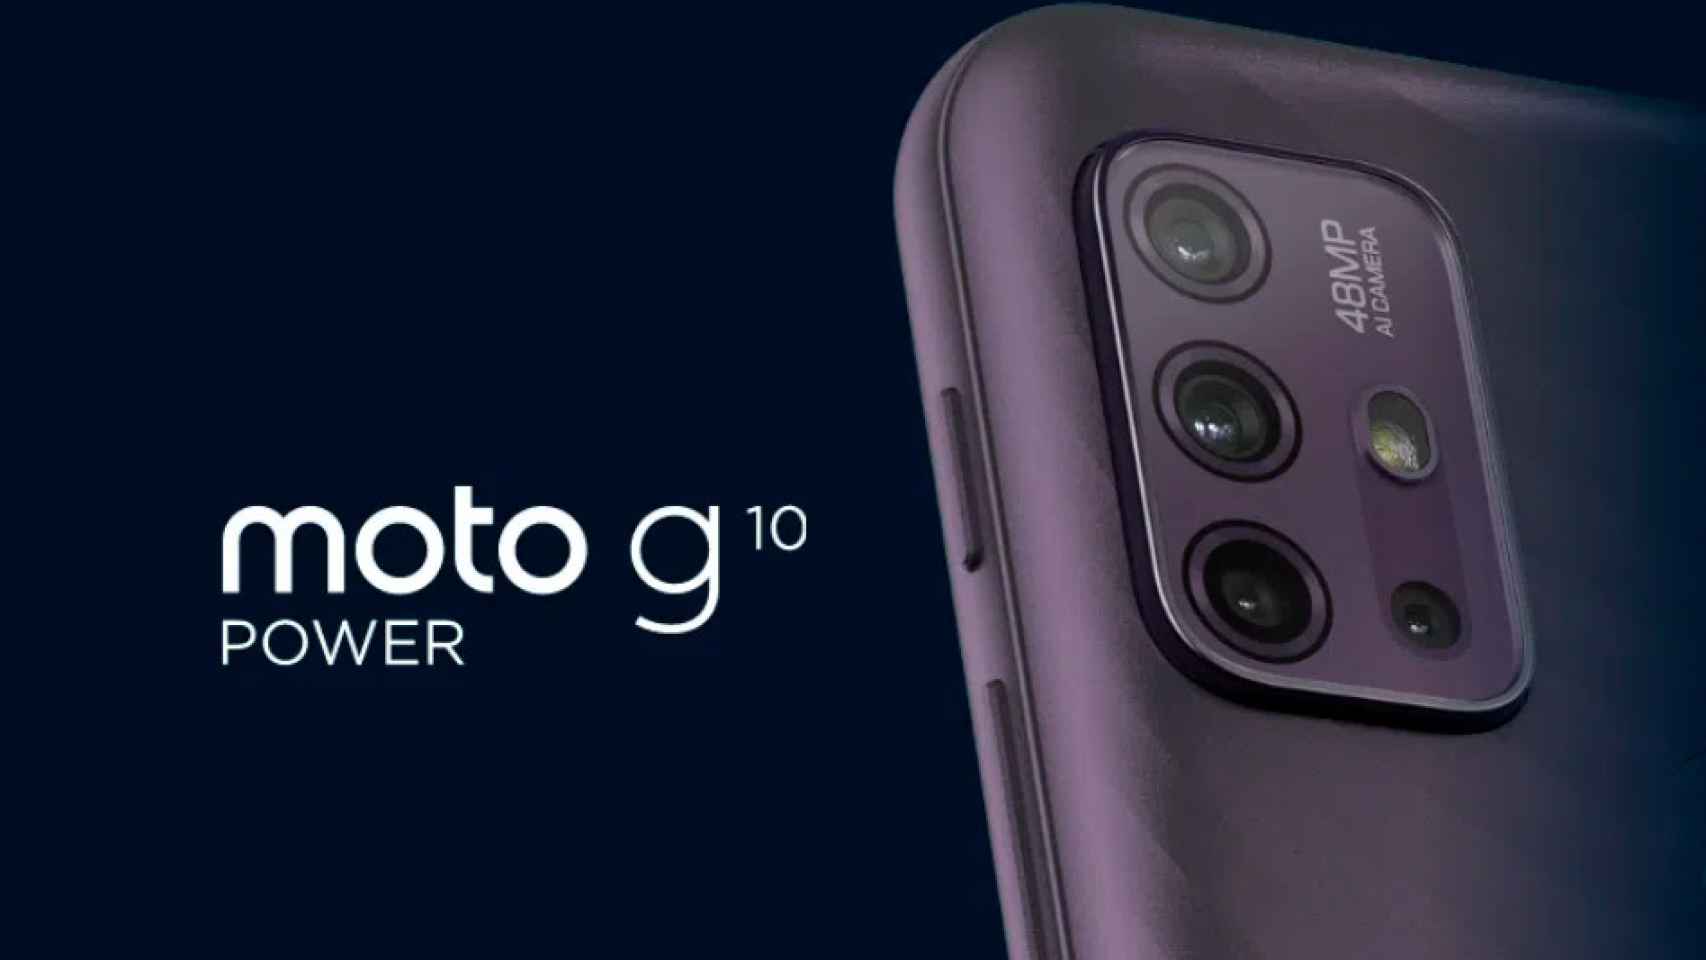 Nuevo Motorola Moto G10 Power: características, precios…